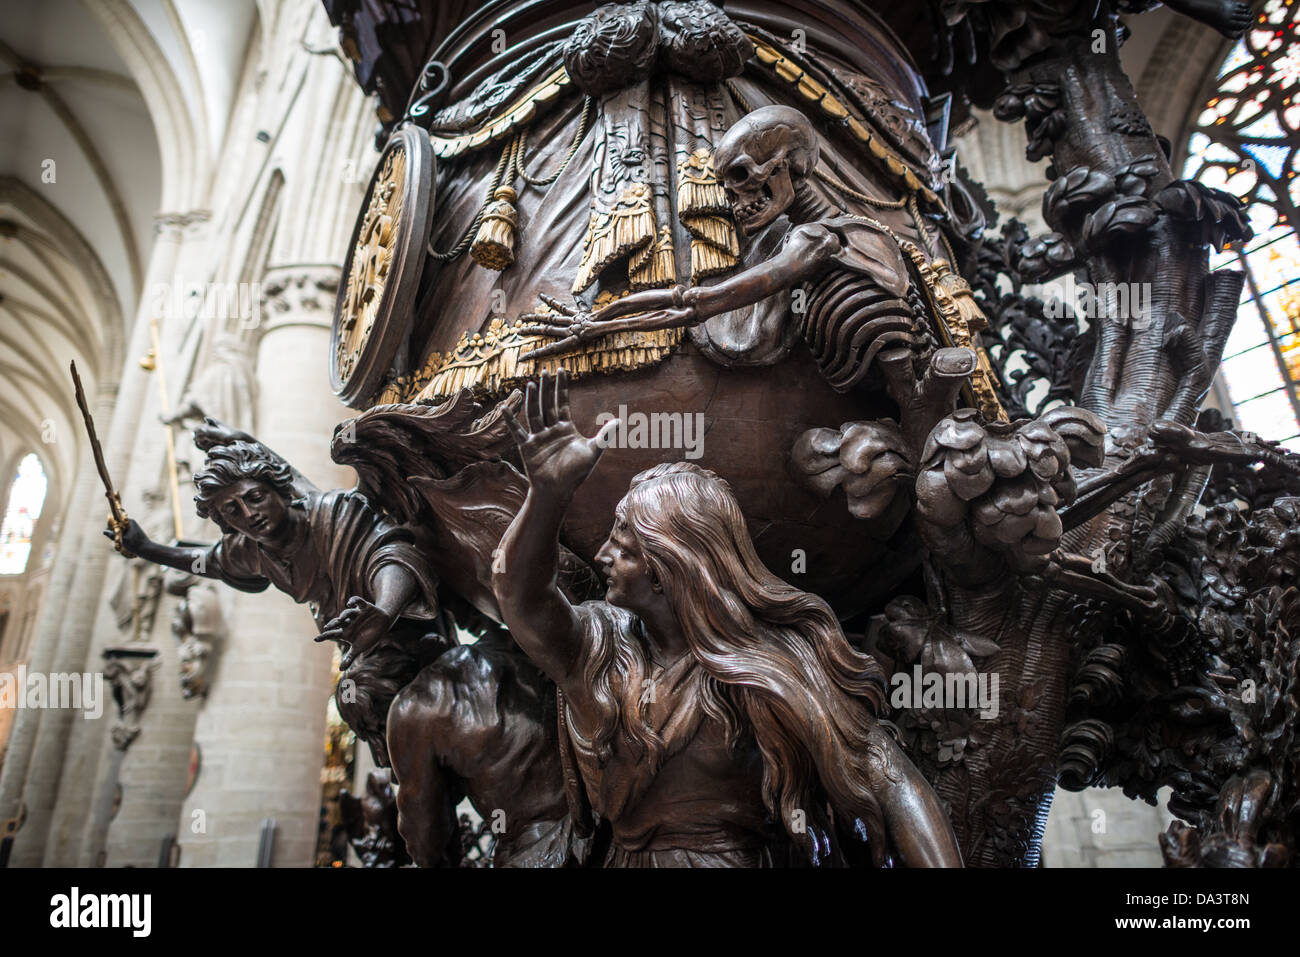 Bruselas, Bélgica - Parte de la profusamente púlpito de madera tallada en la Catedral de San Miguel y Santa Gudula (en francés, Co-Cathédrale collégiale des Ss-Michel et Gudule). La iglesia fue fundada en este sitio en el siglo XI, pero el edificio actual data de los siglos XIII, XIV y XV. La catedral Católica Romana es la sede de muchas de las funciones del Estado como coronaciones, bodas reales y funerales de Estado. Tiene dos Santos Patronos, San Miguel y Santa Gudula, ambos de los cuales son también los santos patronos de Bruselas. Foto de stock